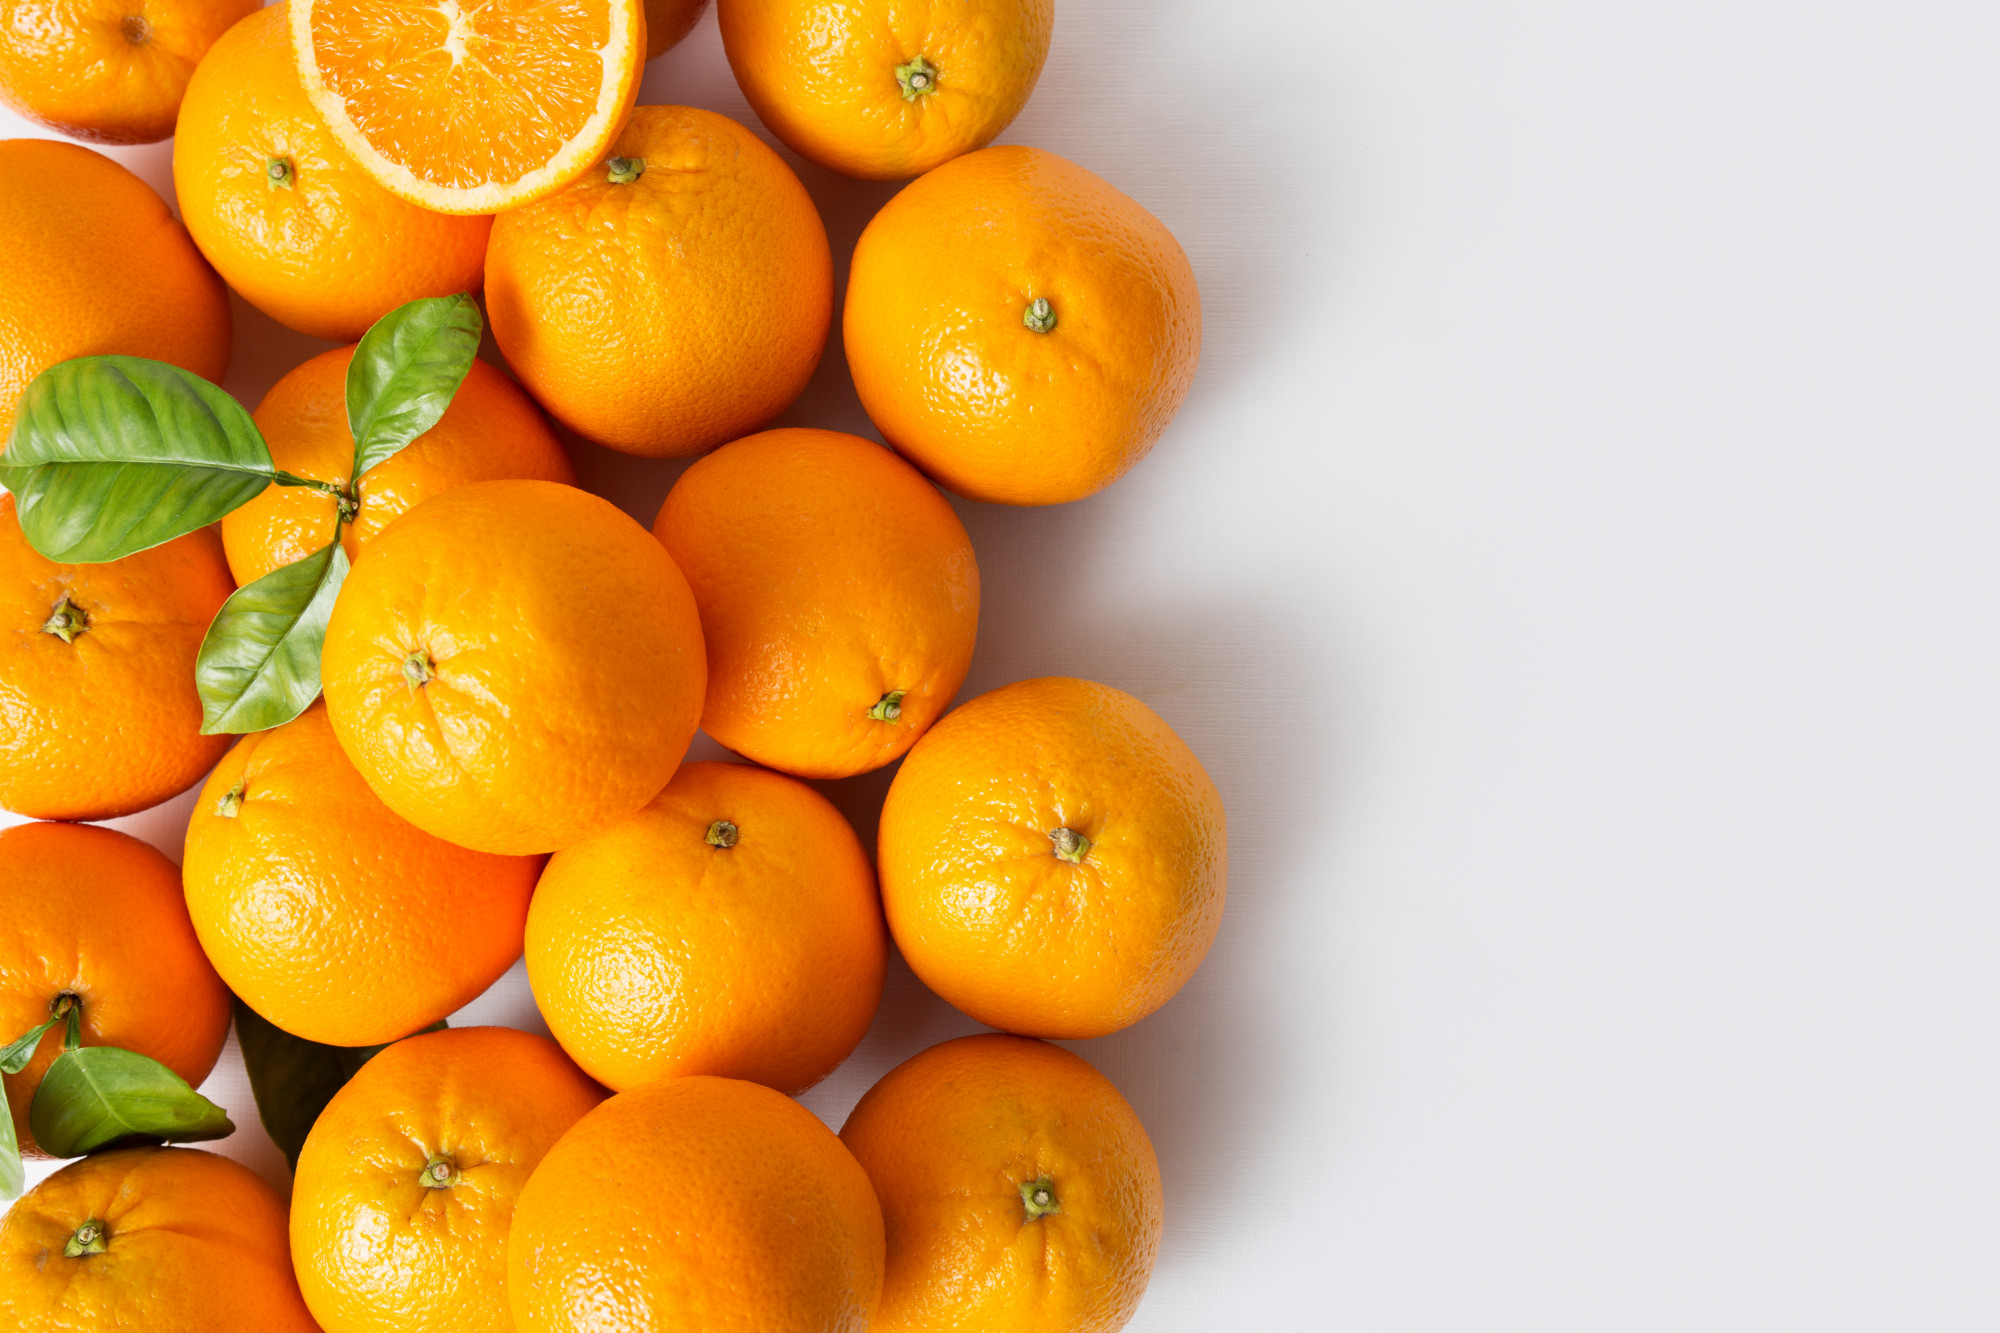 Orange vitamin. Апельсин. Какого цвета апельсин?. Витамины апельсина опасные. 45 Тон мандаринов.